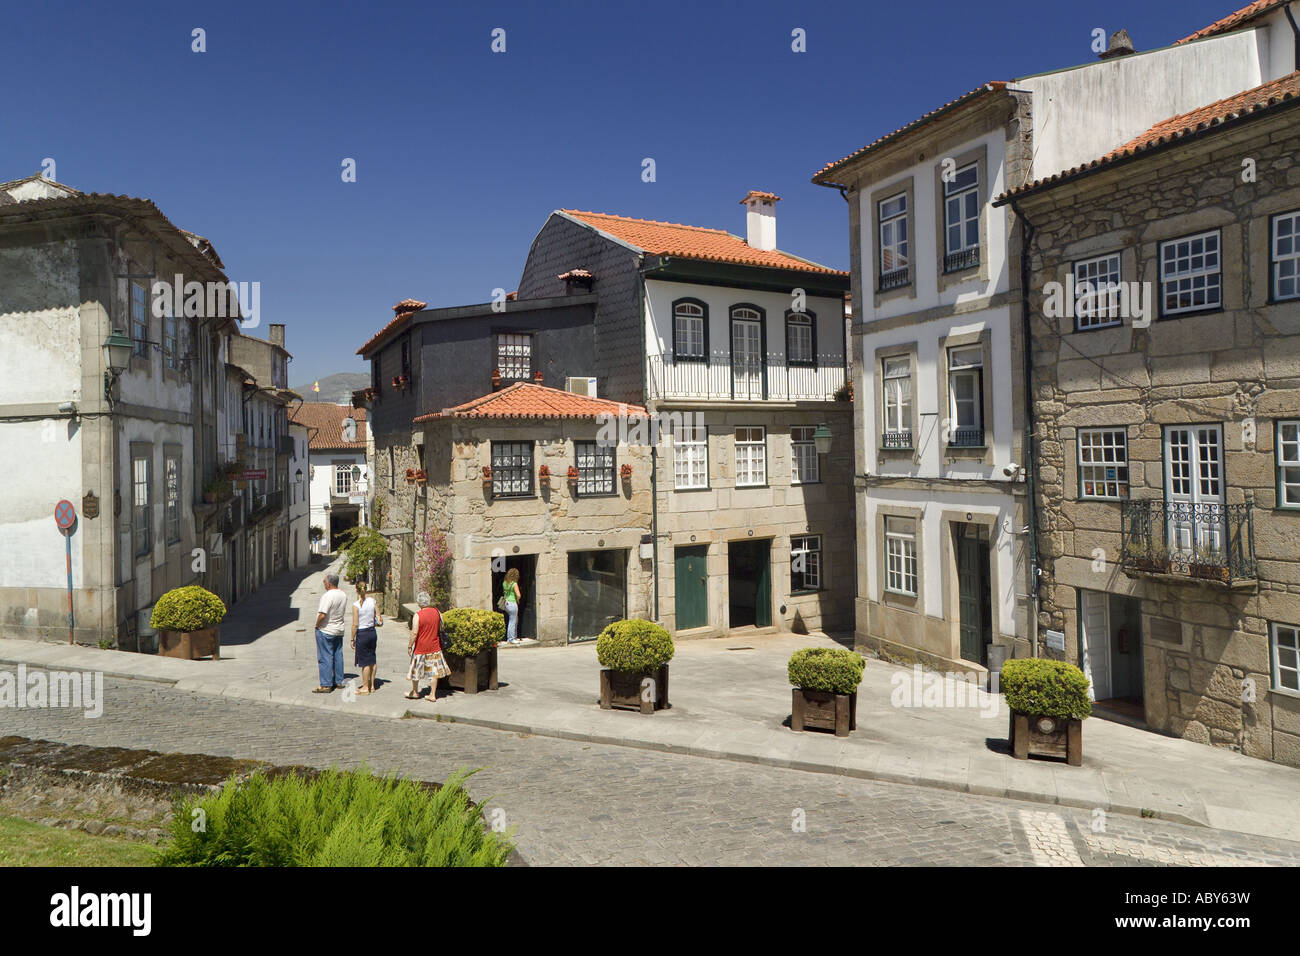 Portugal, the Costa Verde, Ponte de Lima town scene Stock Photo